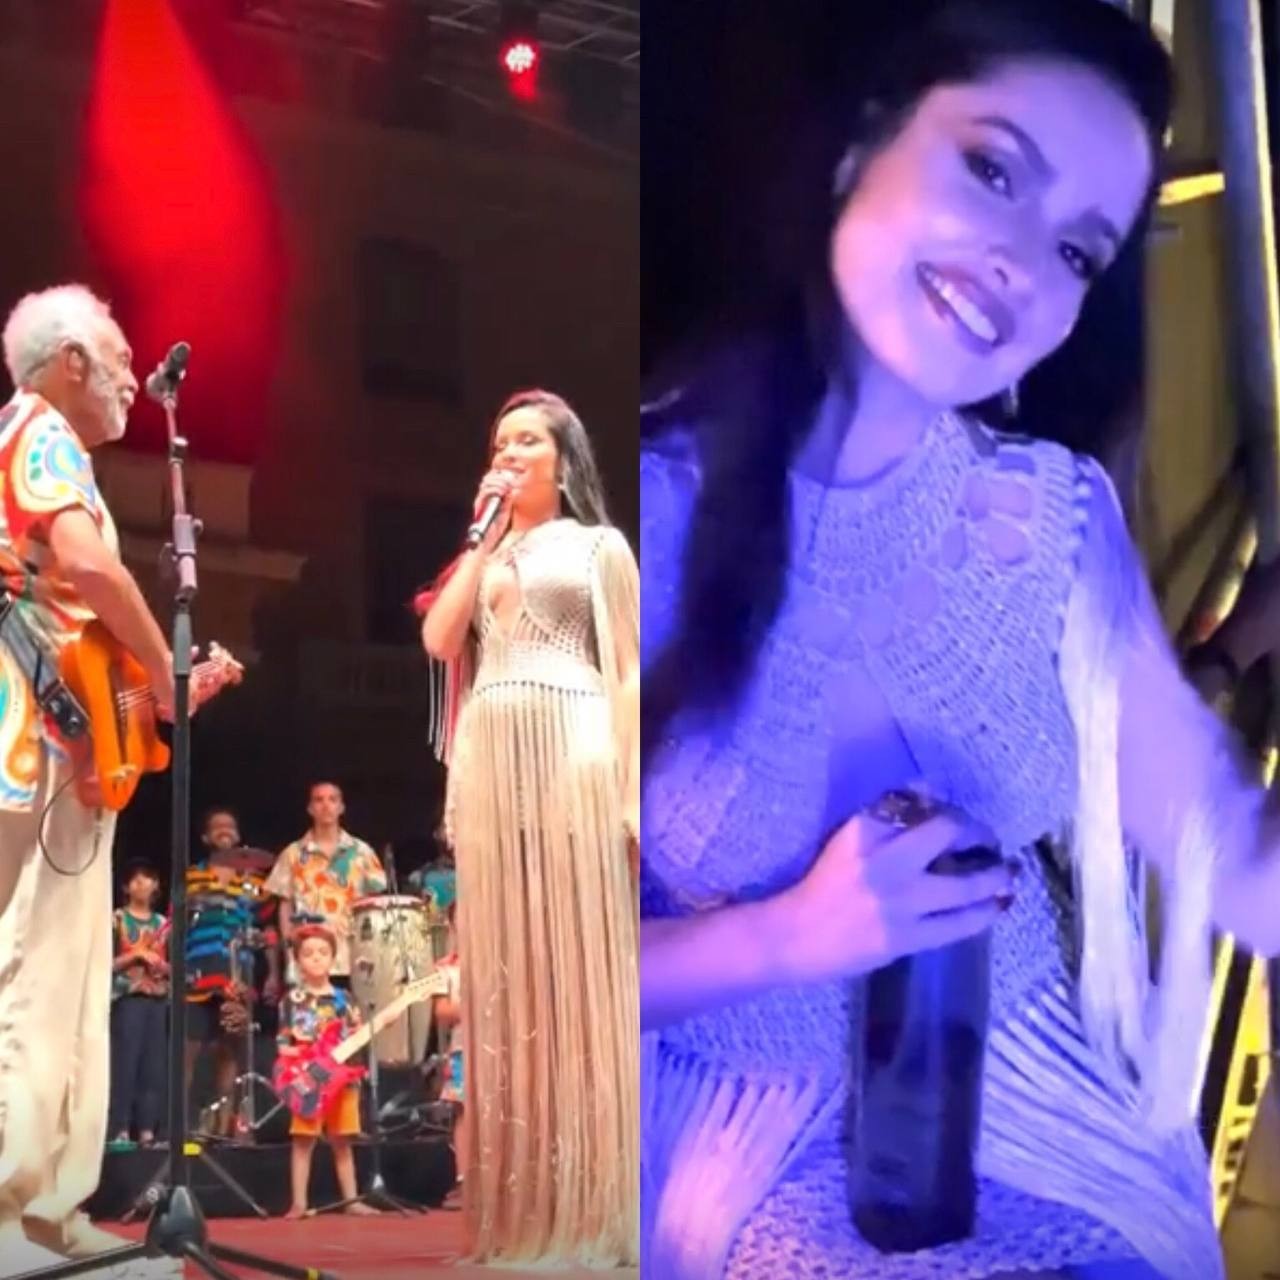 Juliette celebra melhores momentos em show de Gilberto Gil (Foto: Reprodução / Instagram)